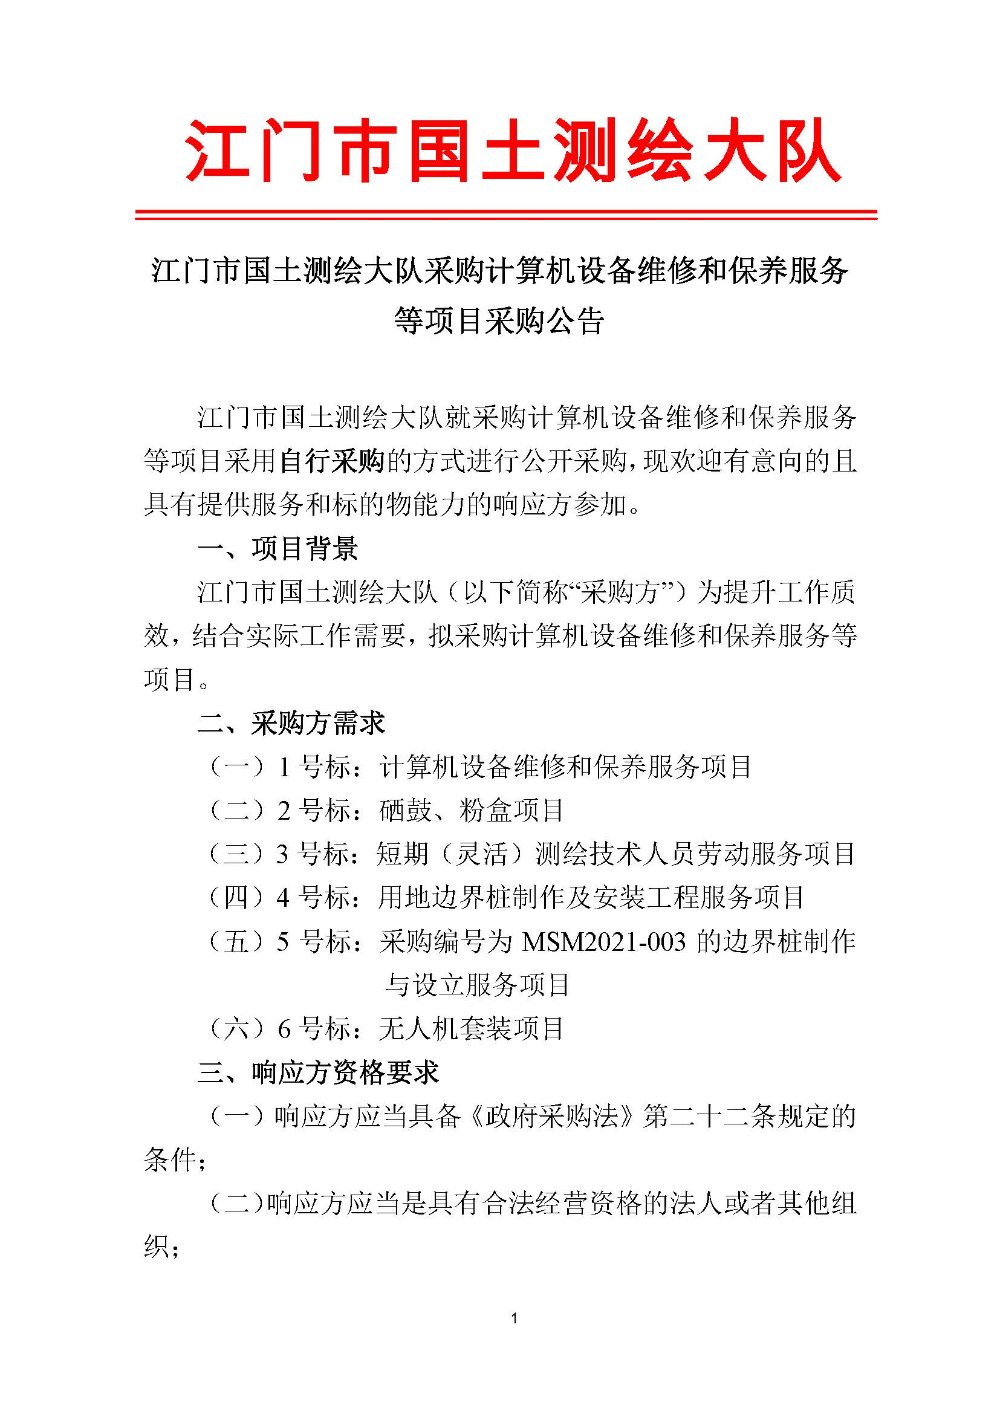 210420江门市国土测绘大队采购计算机设备维修和保养服务等项目采购公告 (1).jpg